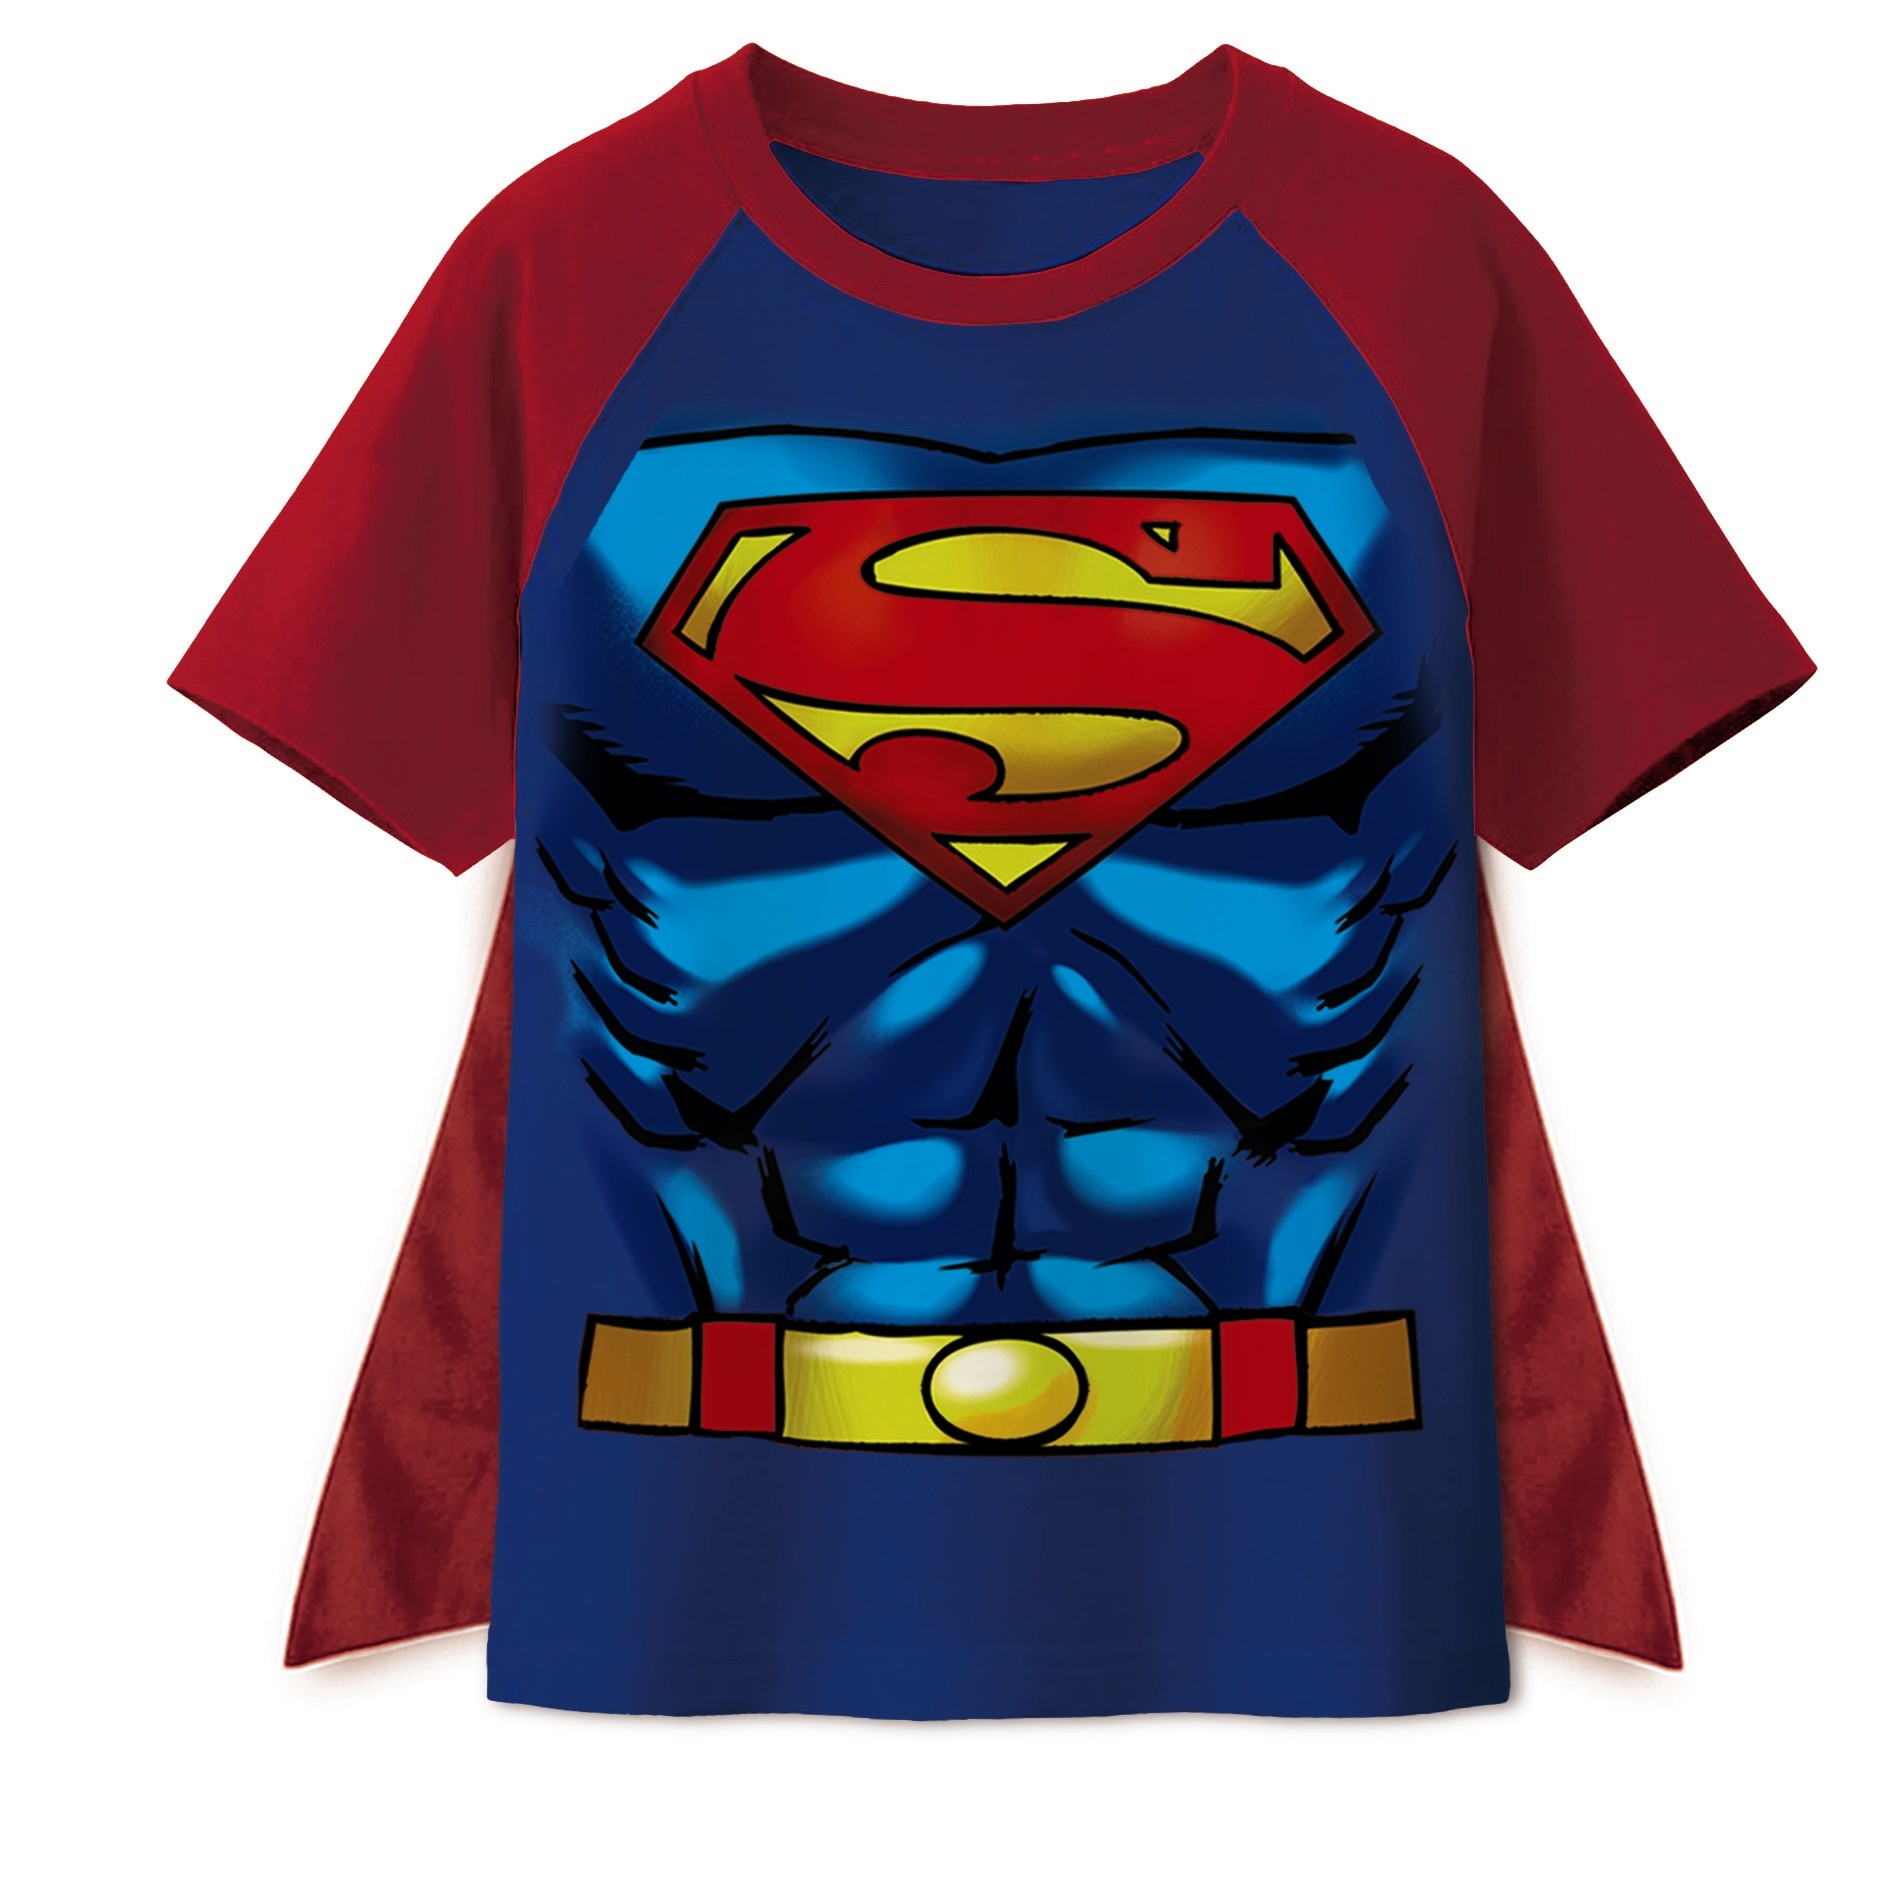 DC Comics Boy's Superman Graphic T-Shirt & Cape